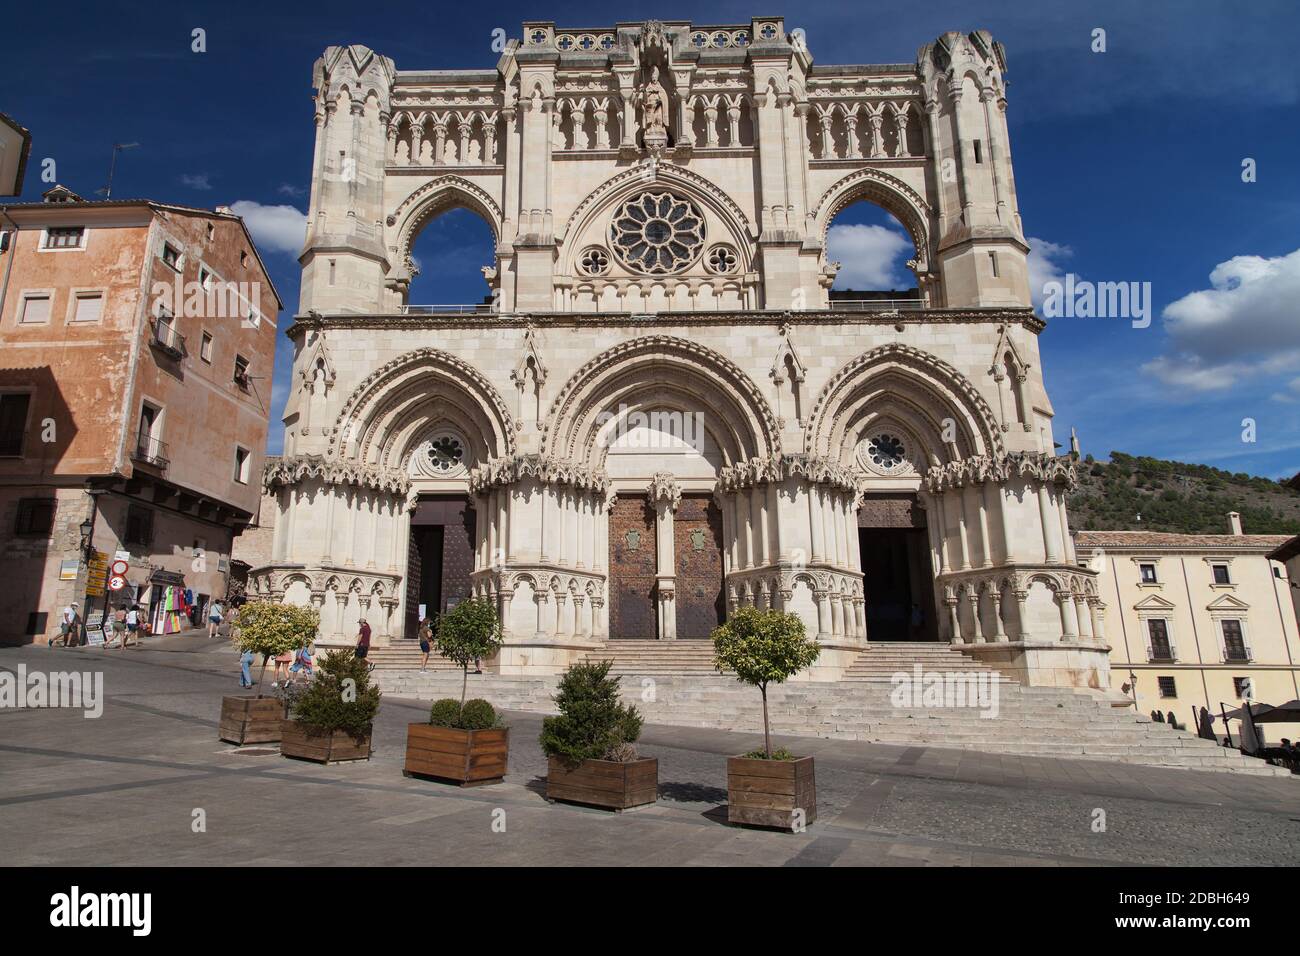 Cuenca, Spain - August 18, 2020: Cathedral of Santa Maria y San Julian in Cuenca, Spain. Stock Photo